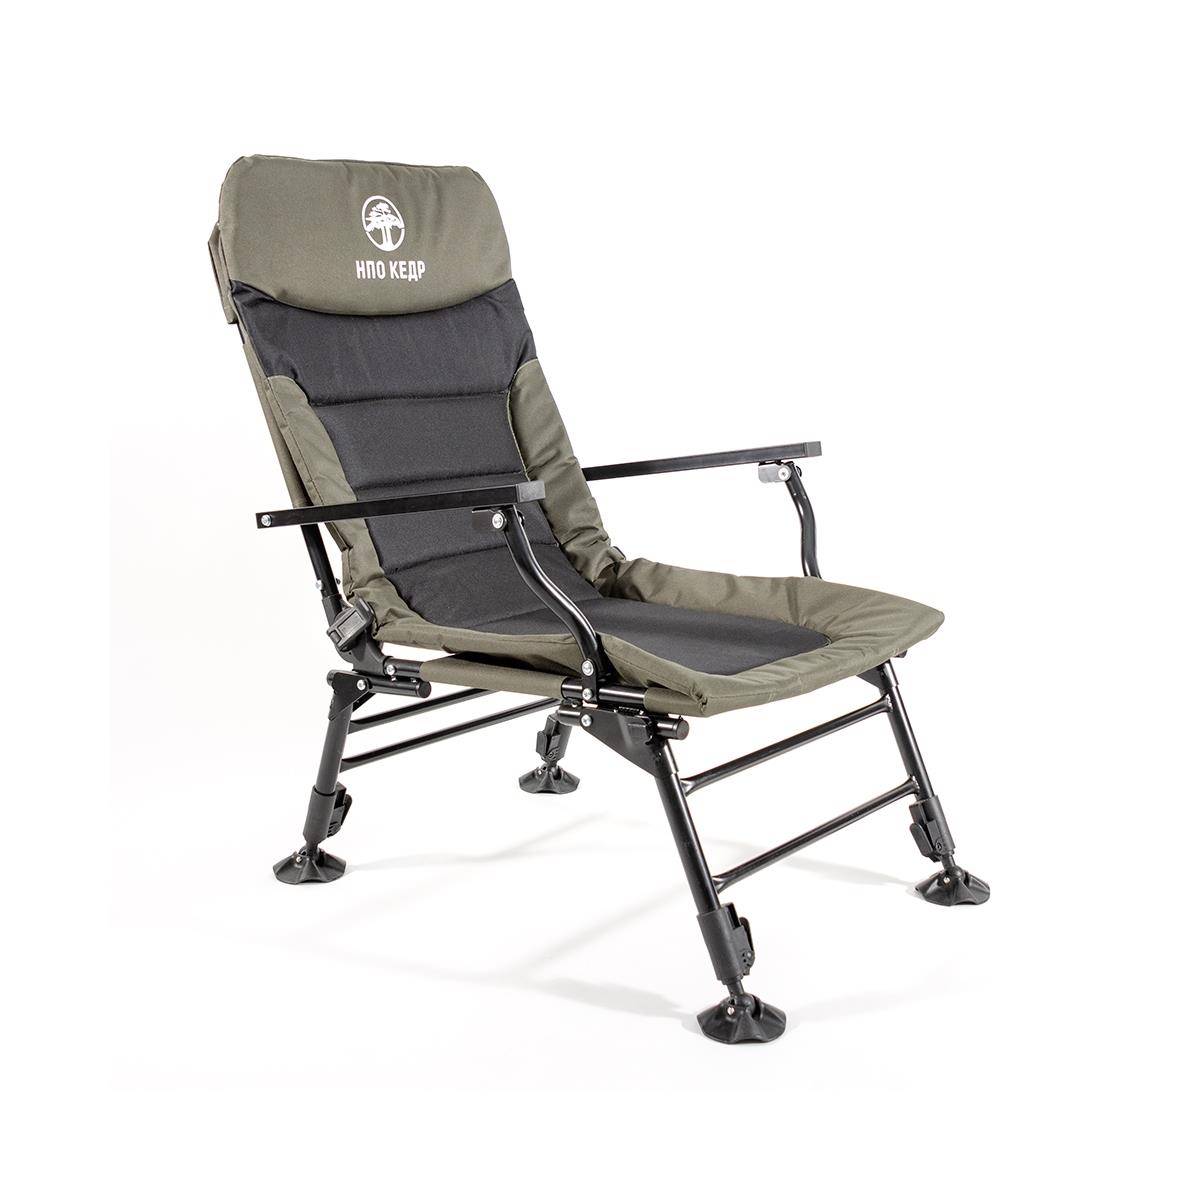 Кресло карповое с подлокотниками (SKC-01)  Кедр кресло карповое с подлокотниками skc 01 кедр